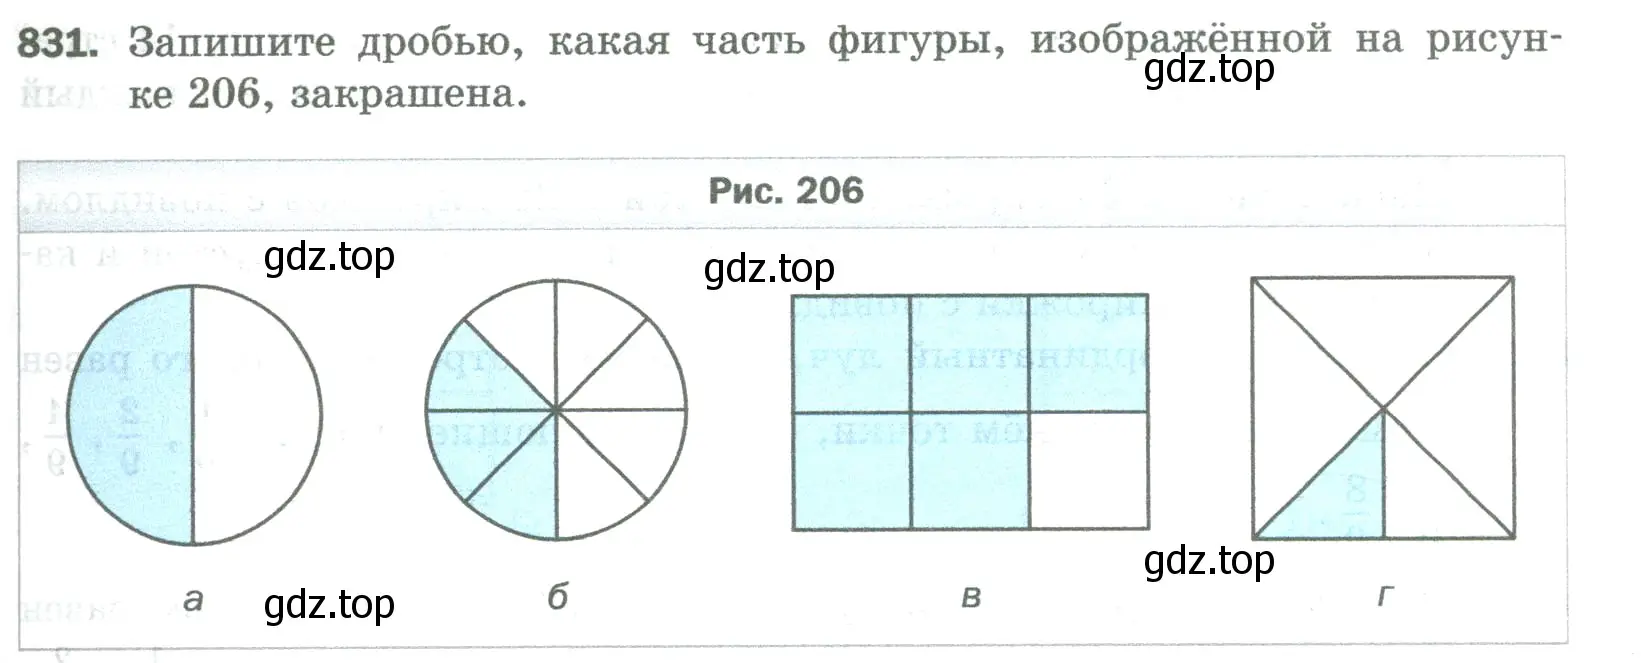 Условие номер 831 (страница 189) гдз по математике 5 класс Мерзляк, Полонский, учебник